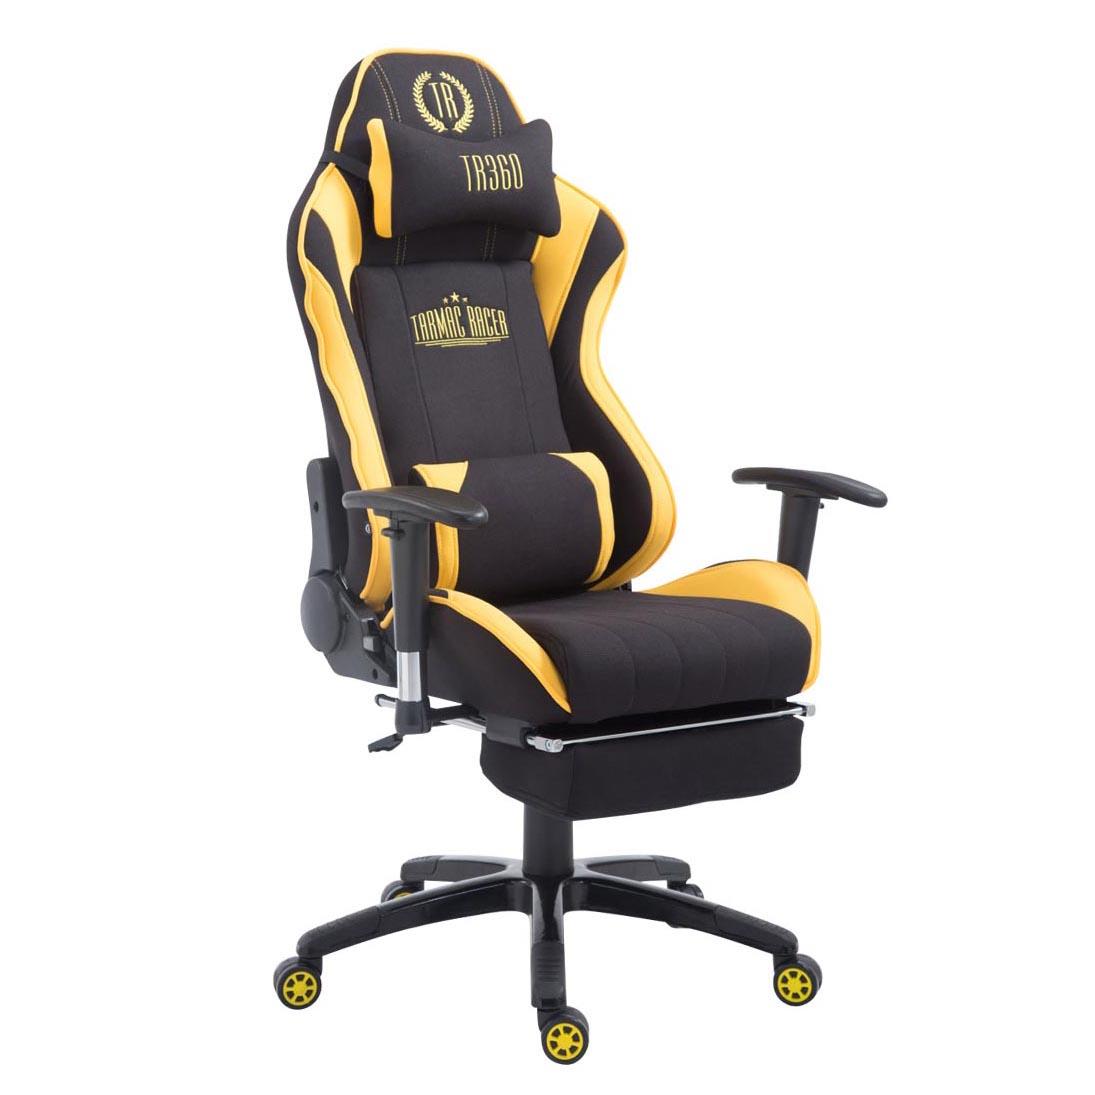 Gaming-Stuhl TURBO STOFF mit Fußablage, neigbare Rückenlehne, Nacken- und Lordosekissen, Farbe Schwarz / Gelb